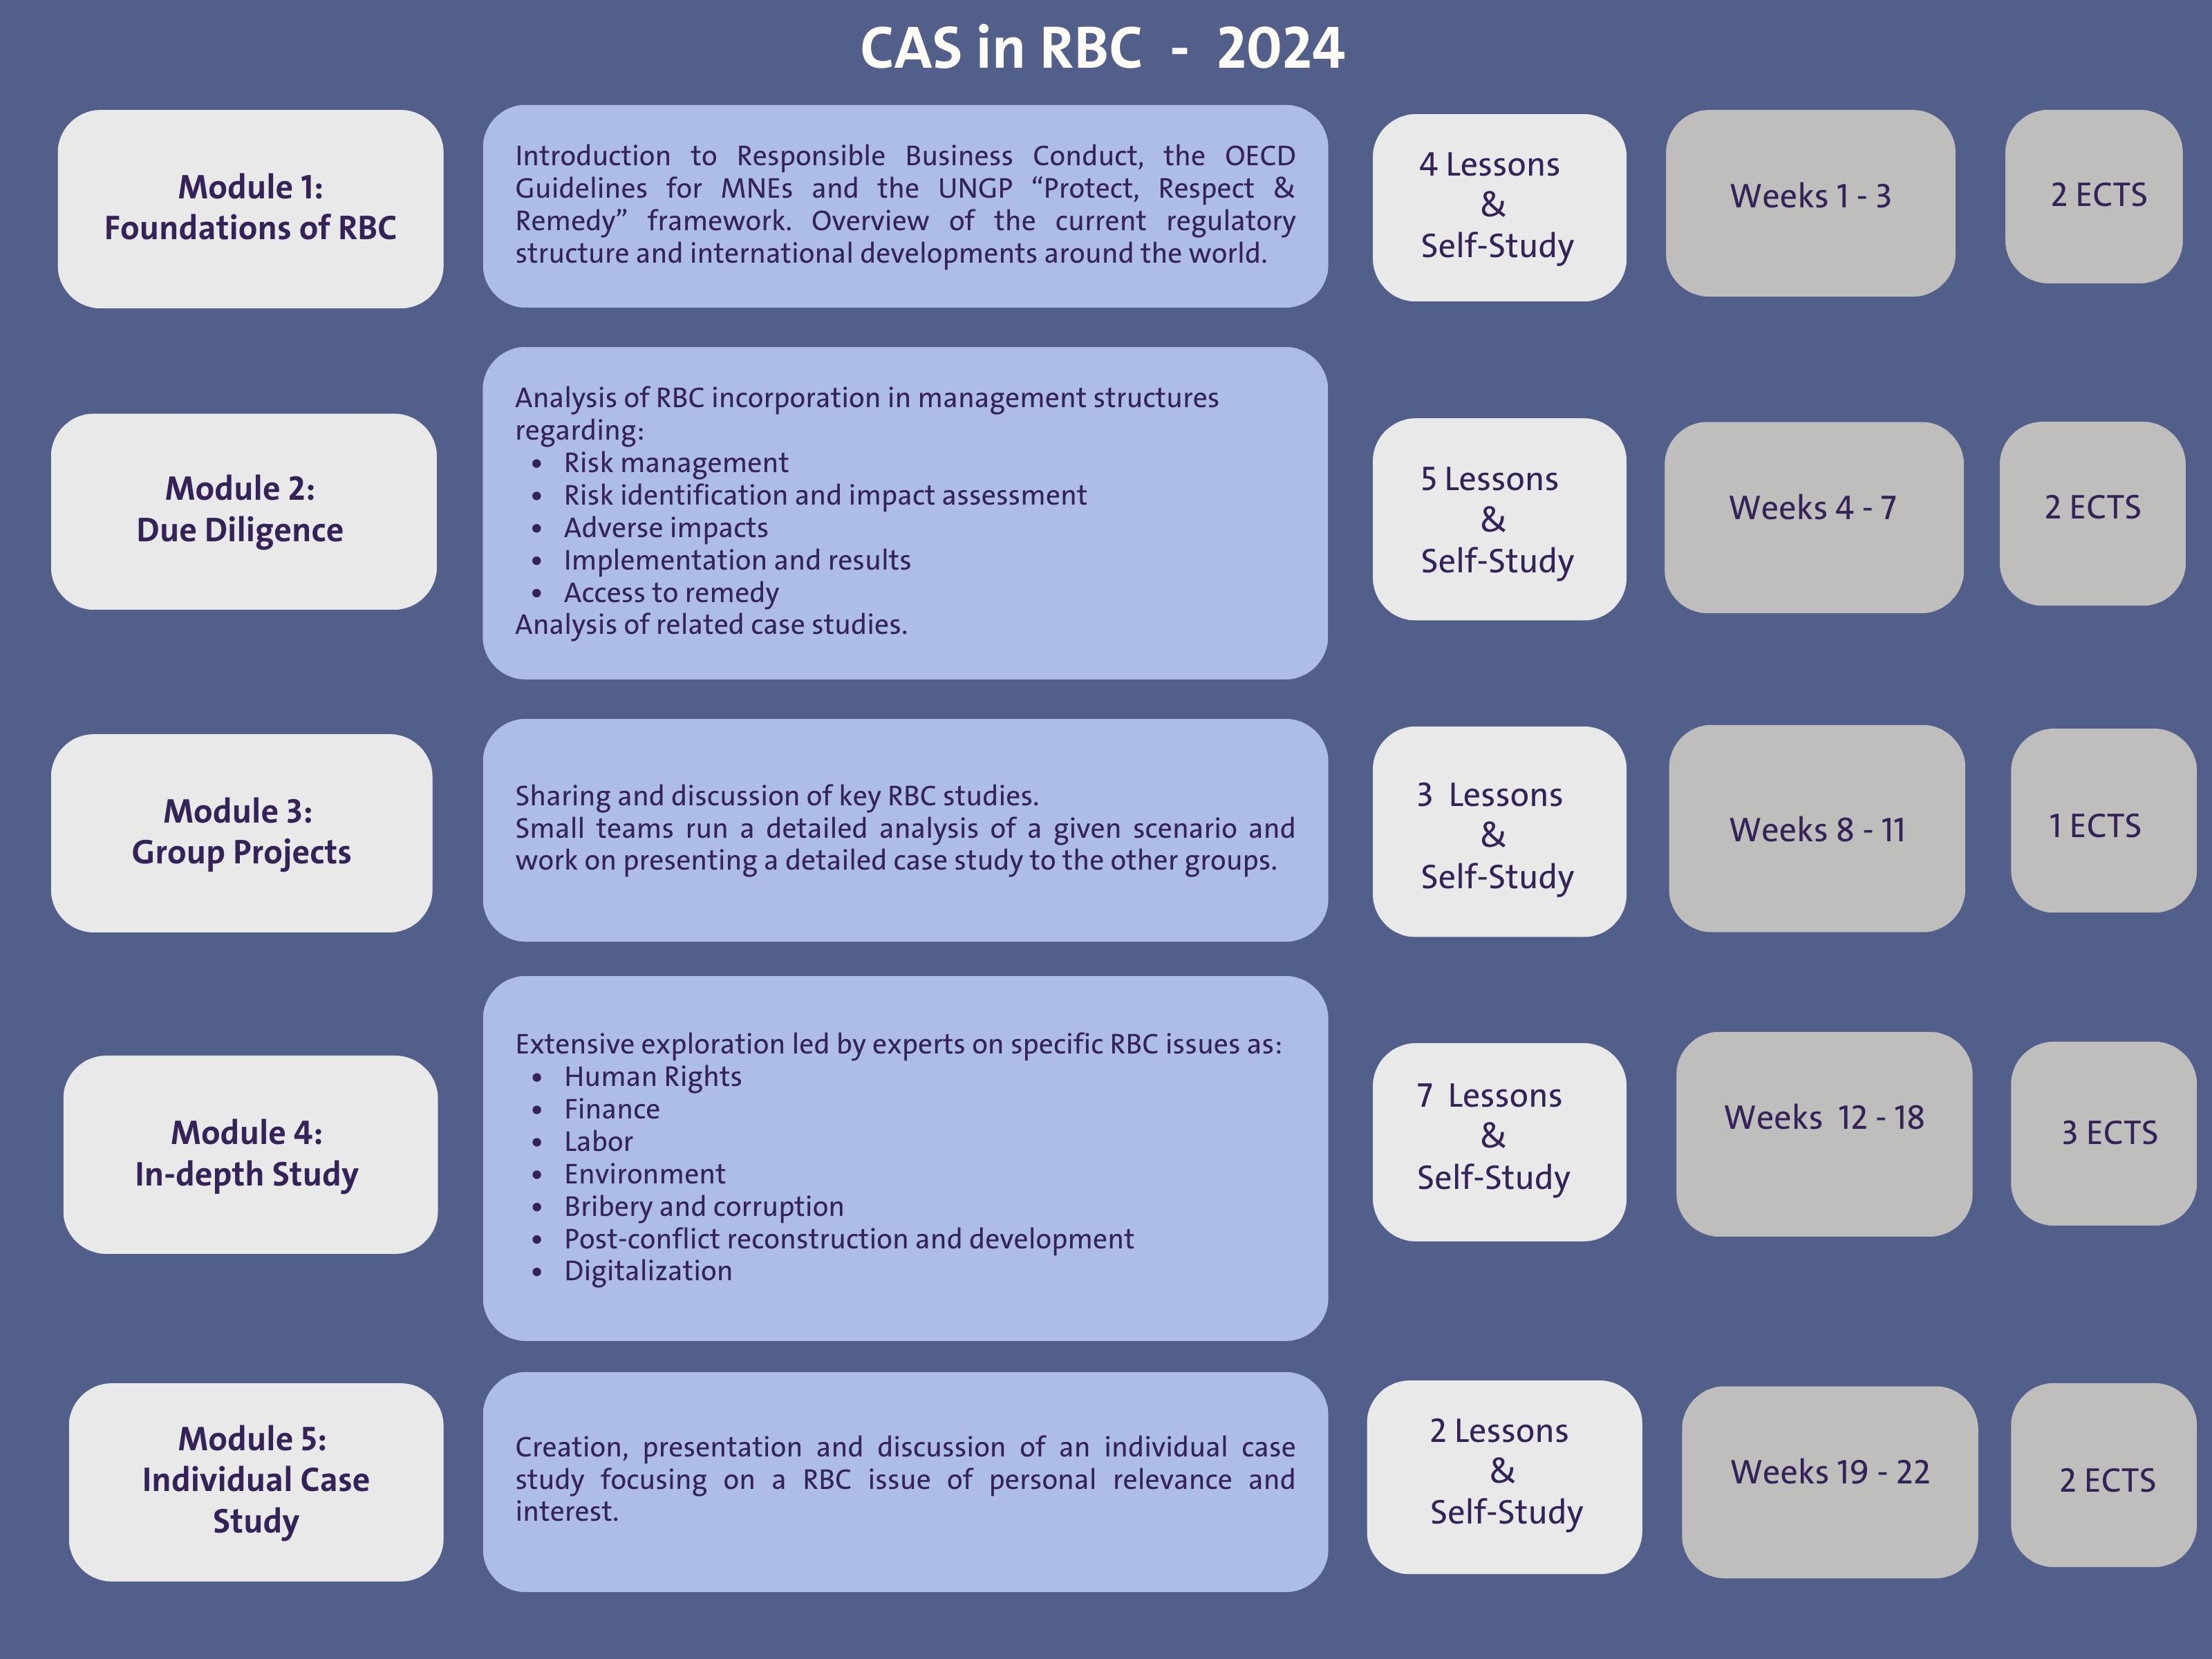 CAS Content Plan